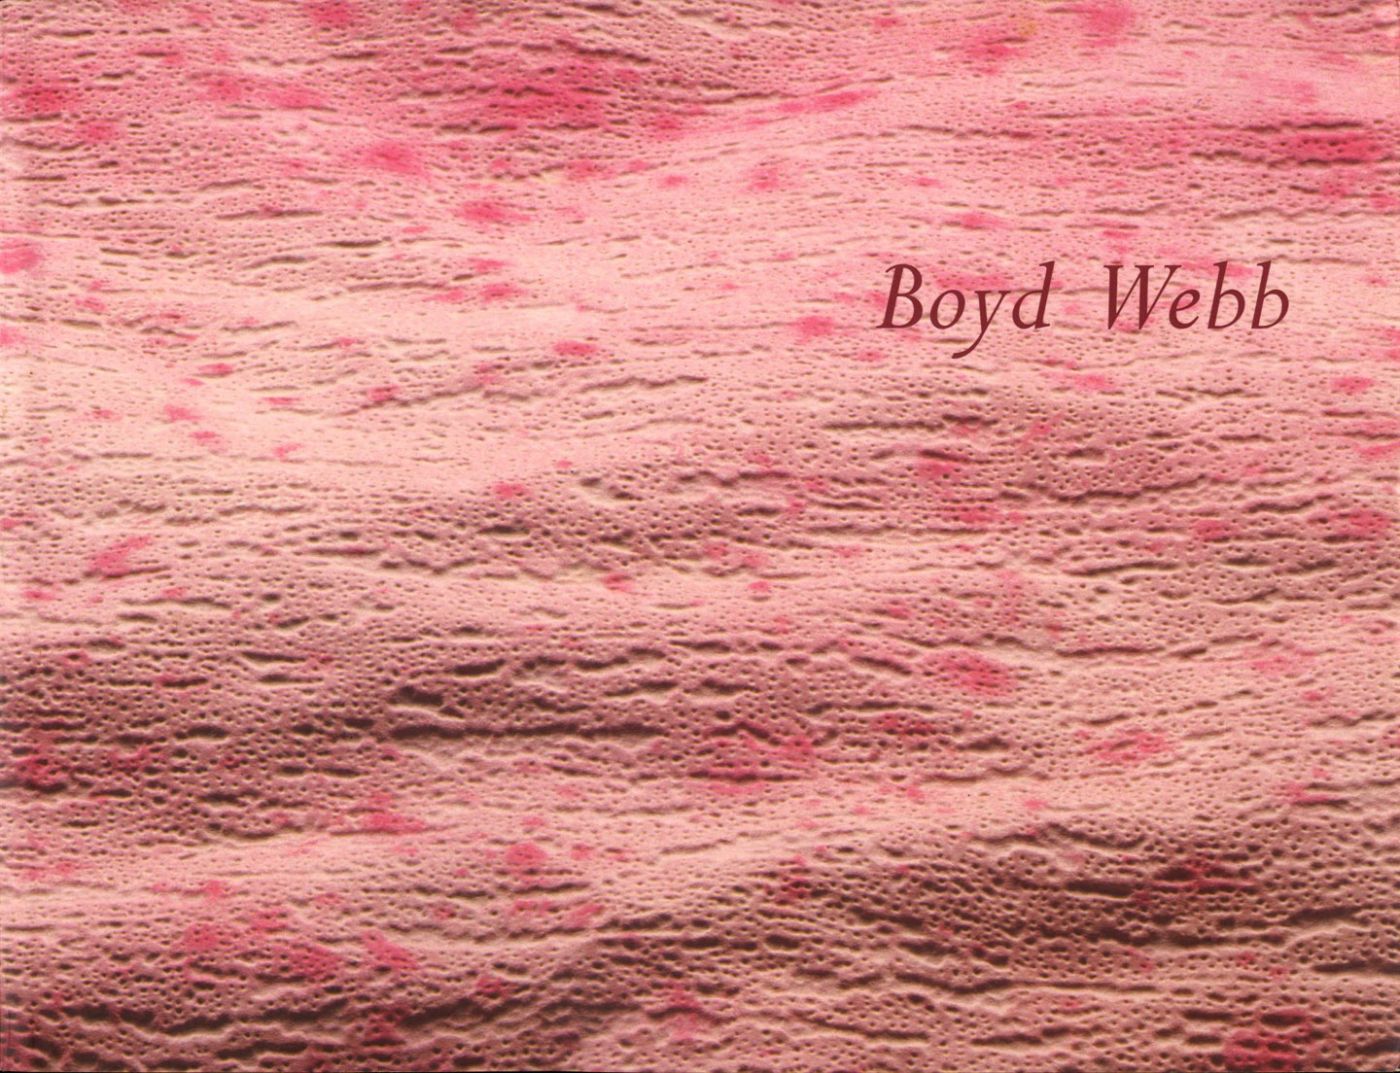 Boyd Webb: VIII Indian Triennale